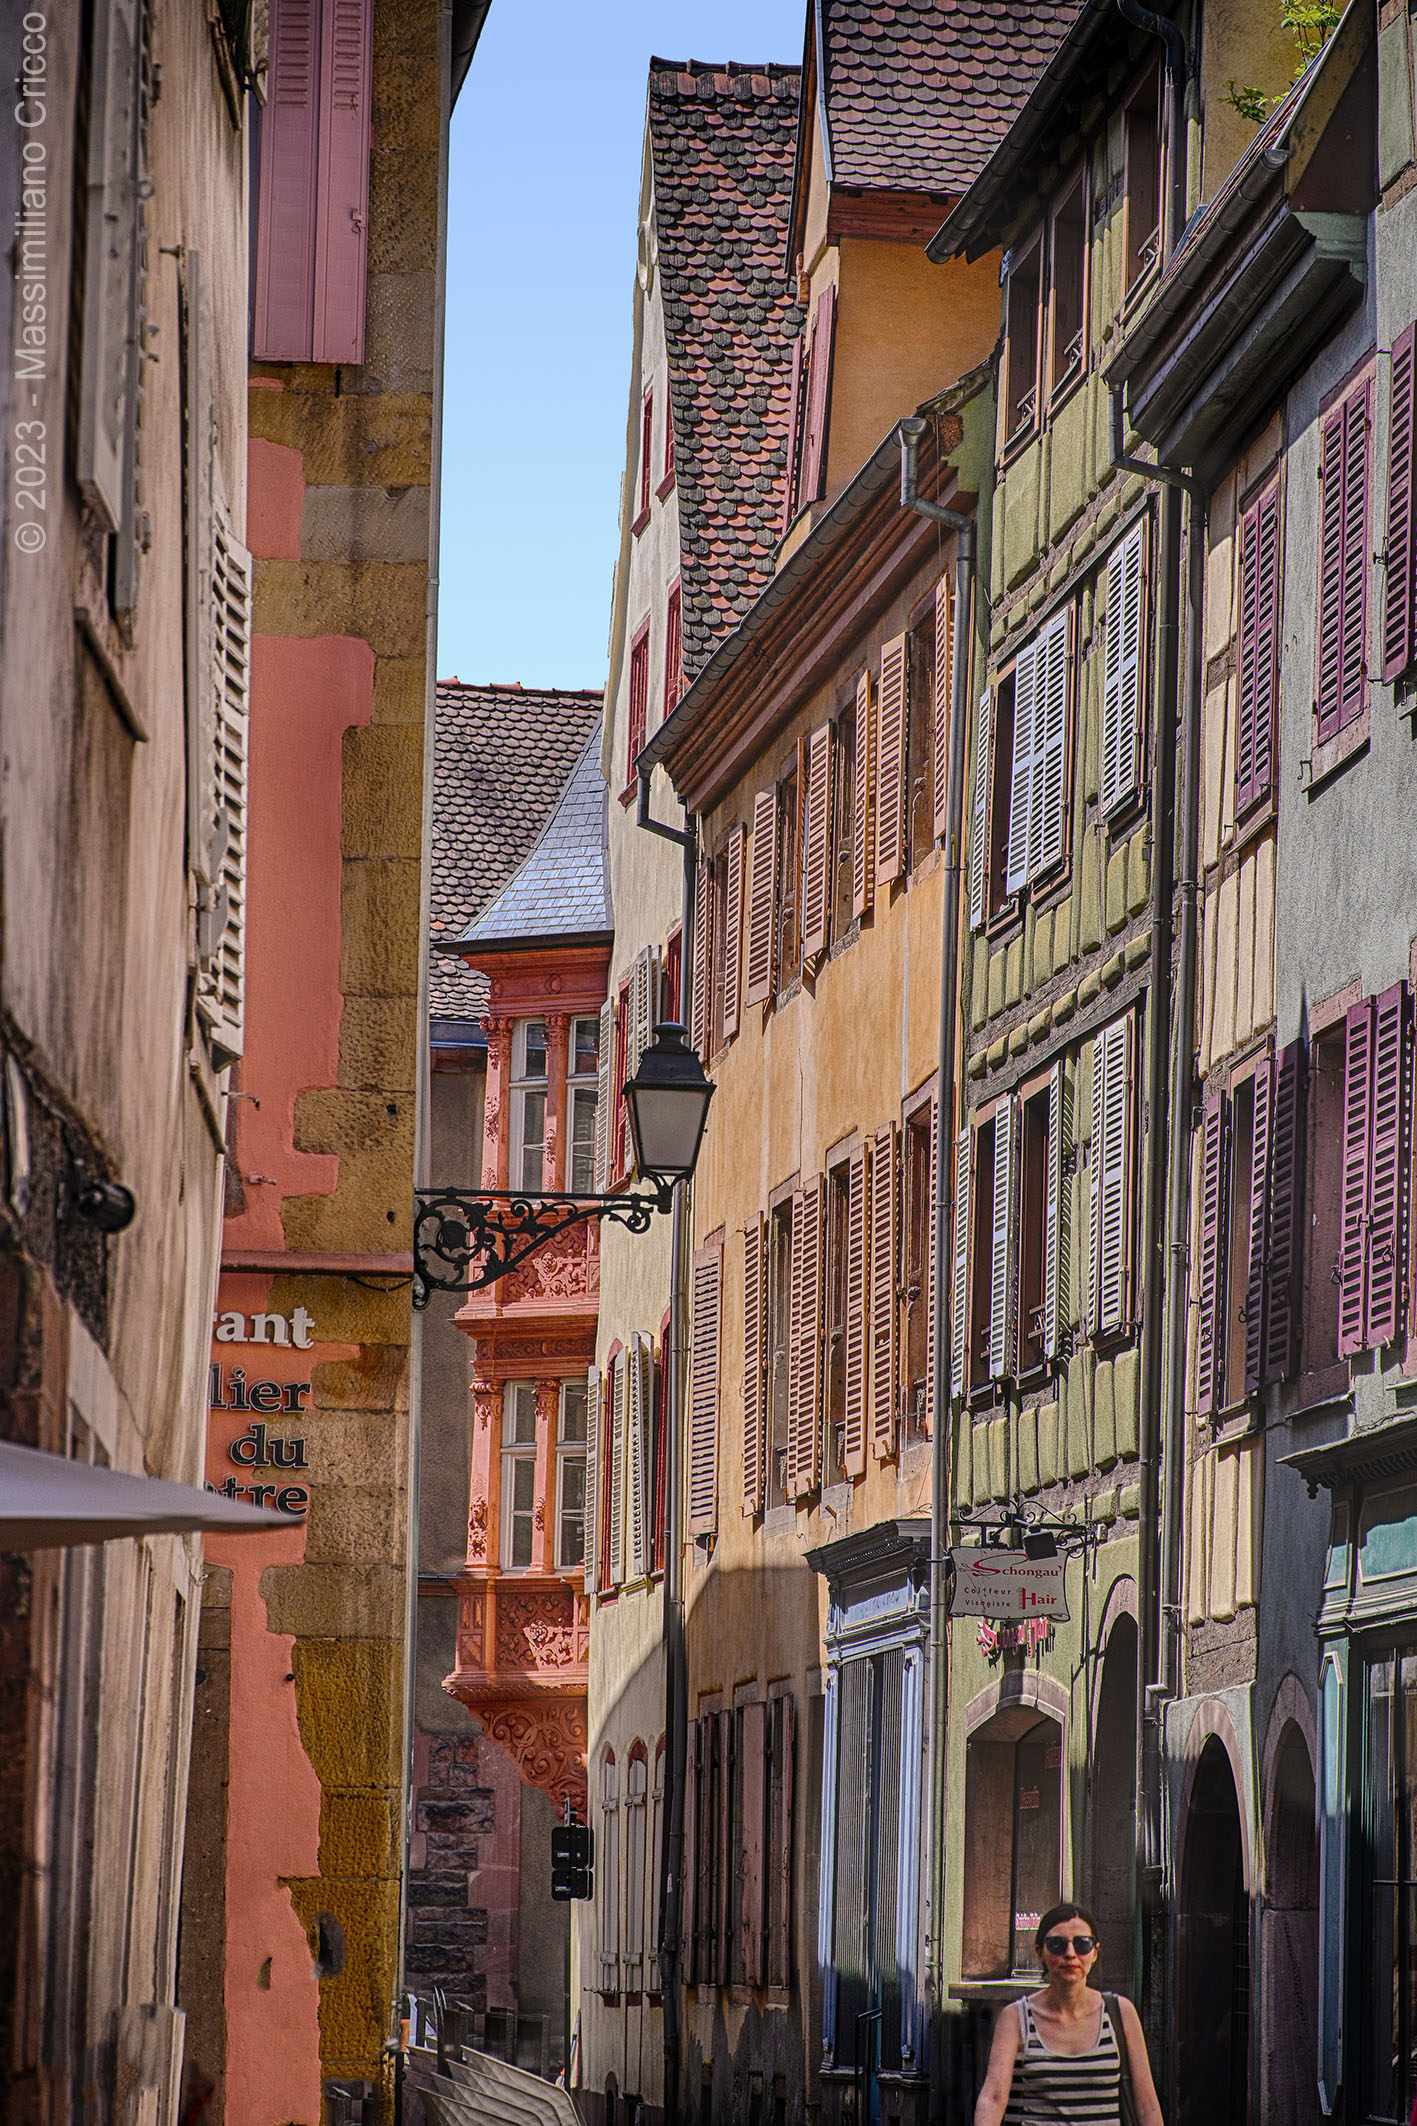 La vielle ville - Colmar - Alsace - France...